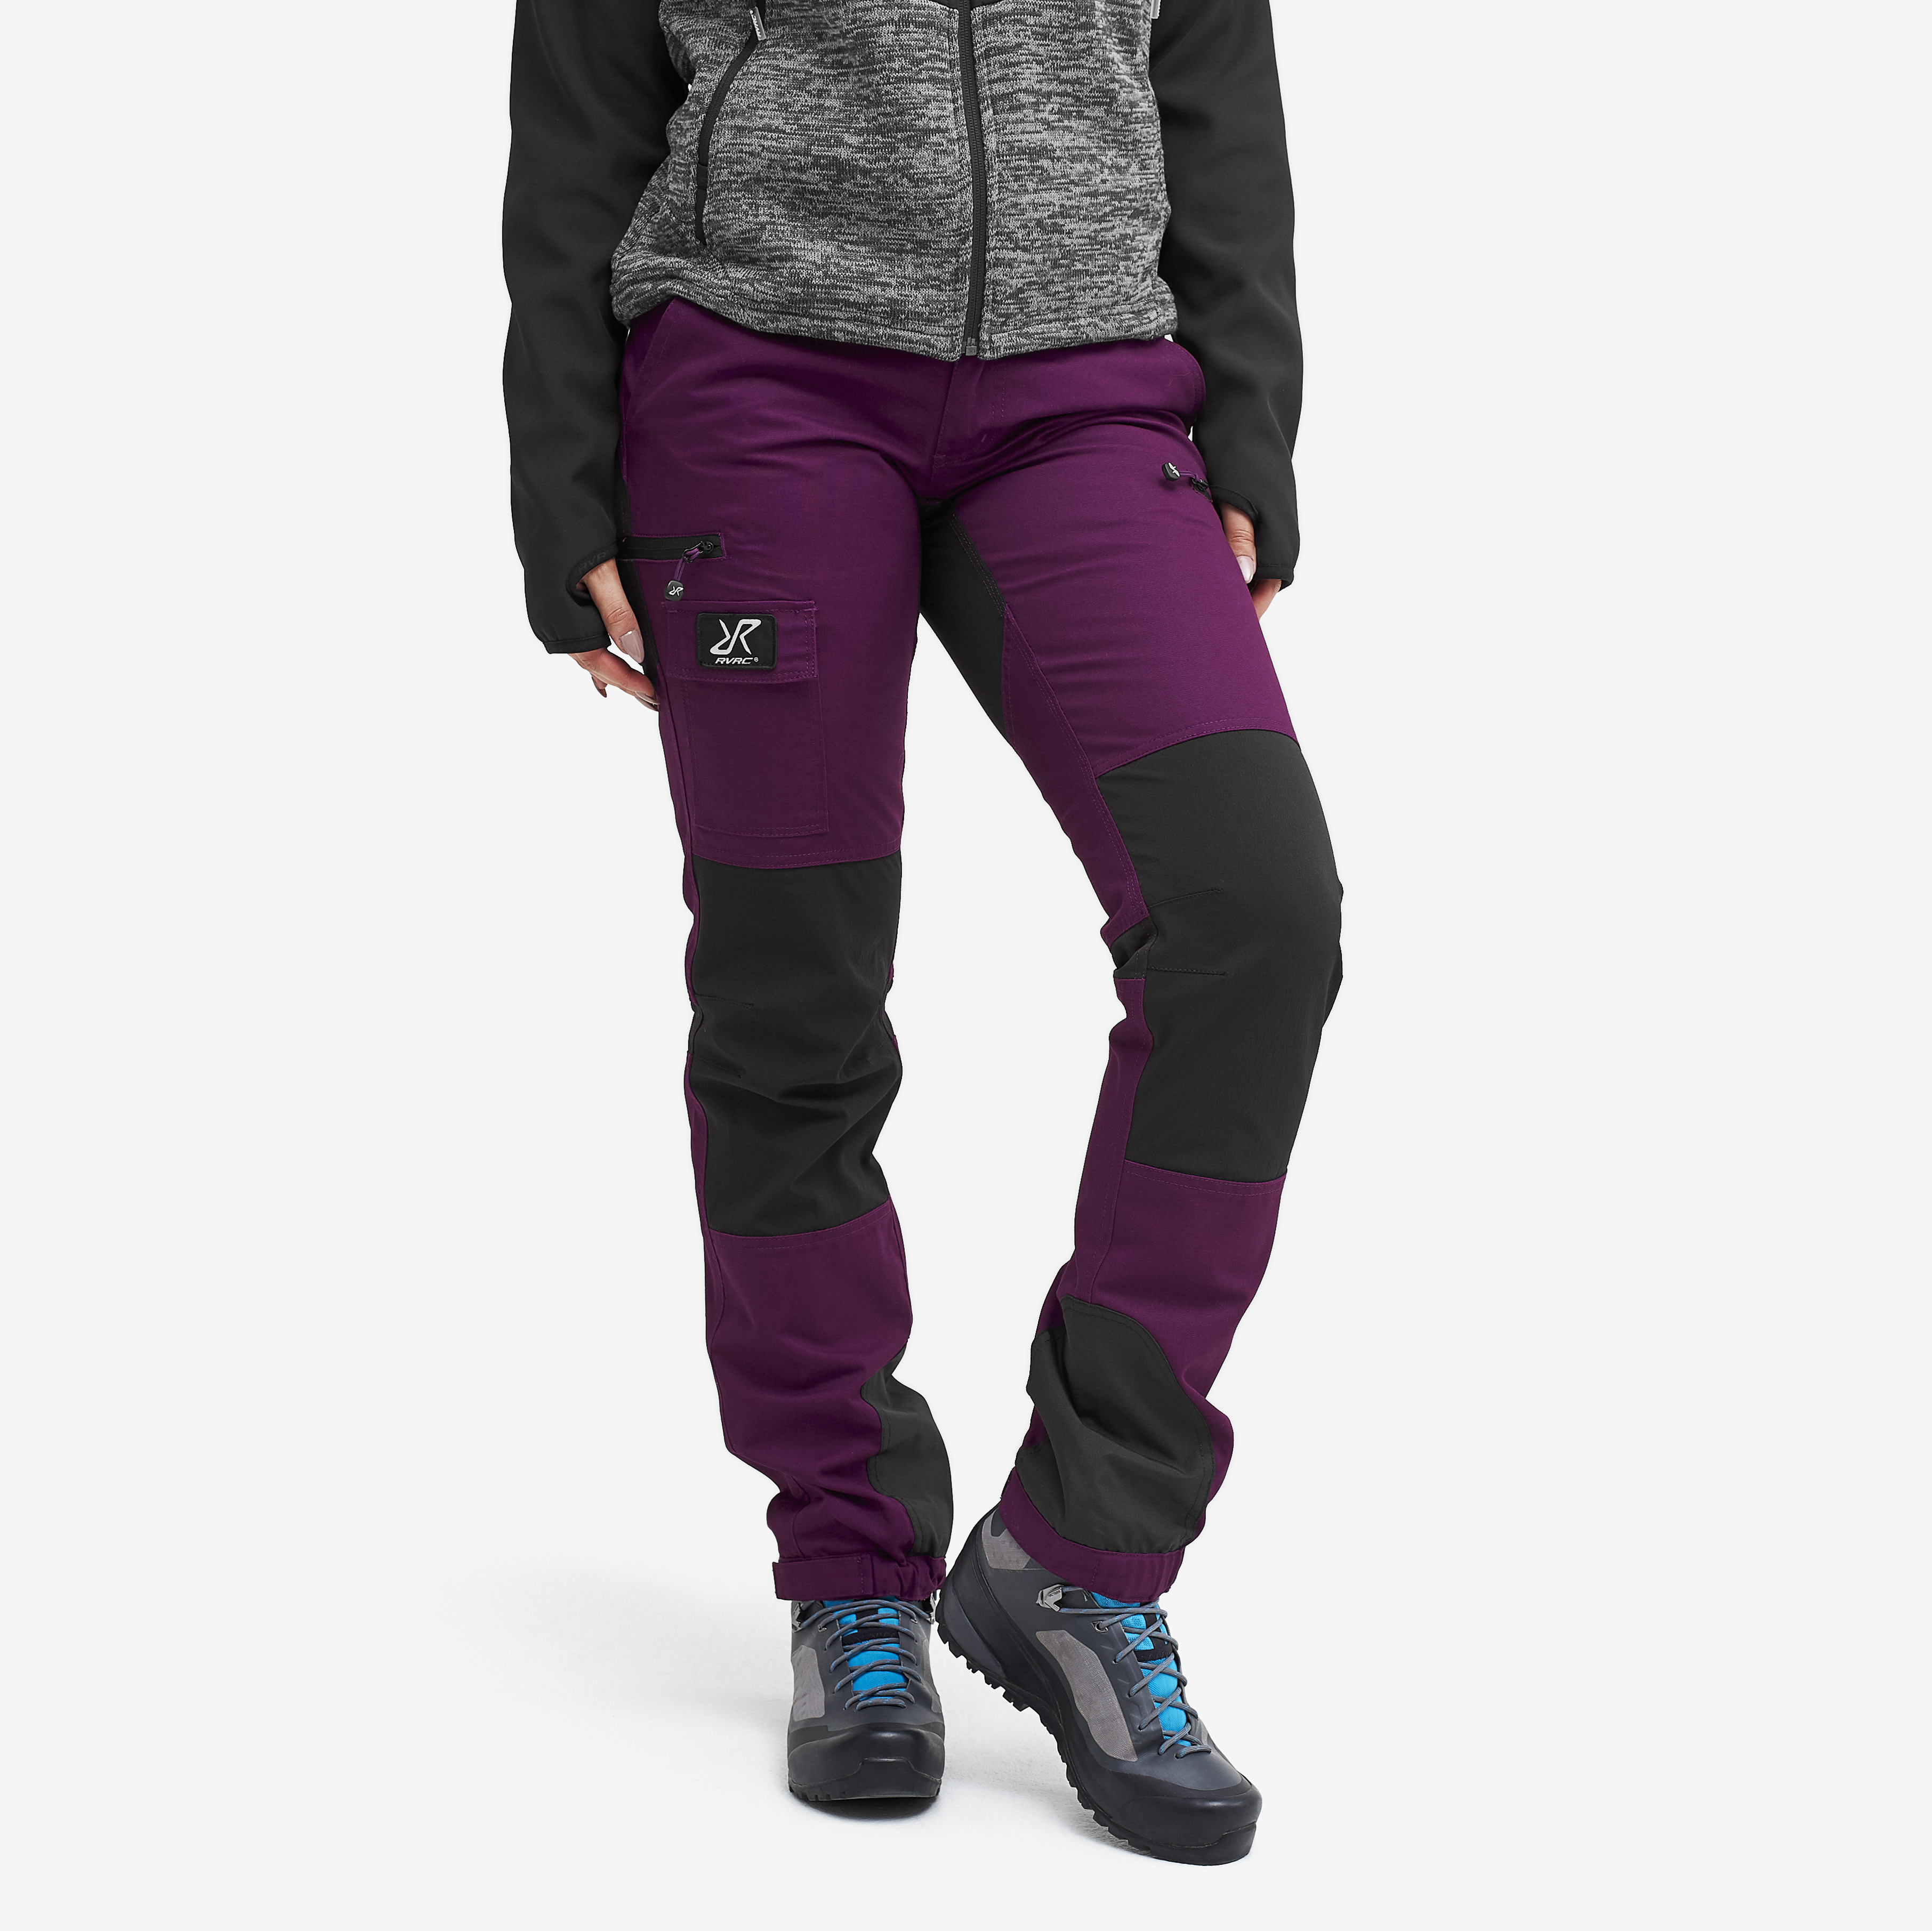 Nordwand outdoorové kalhoty pro ženy v nachové barvě